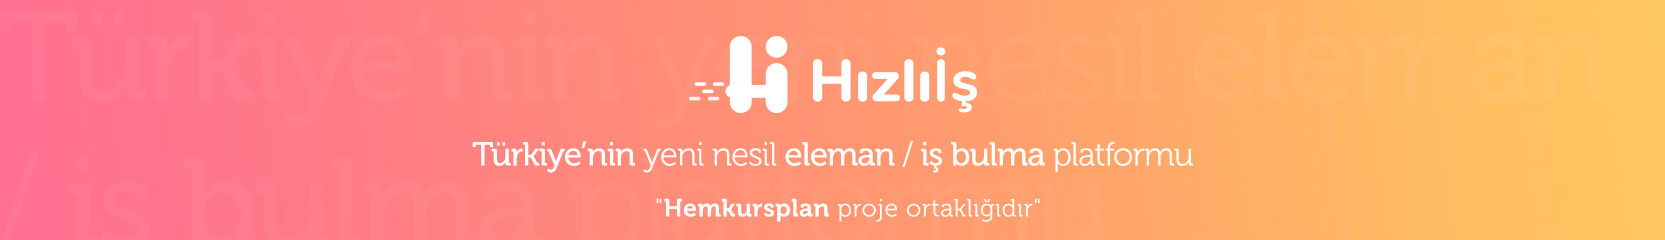 hizliis.com